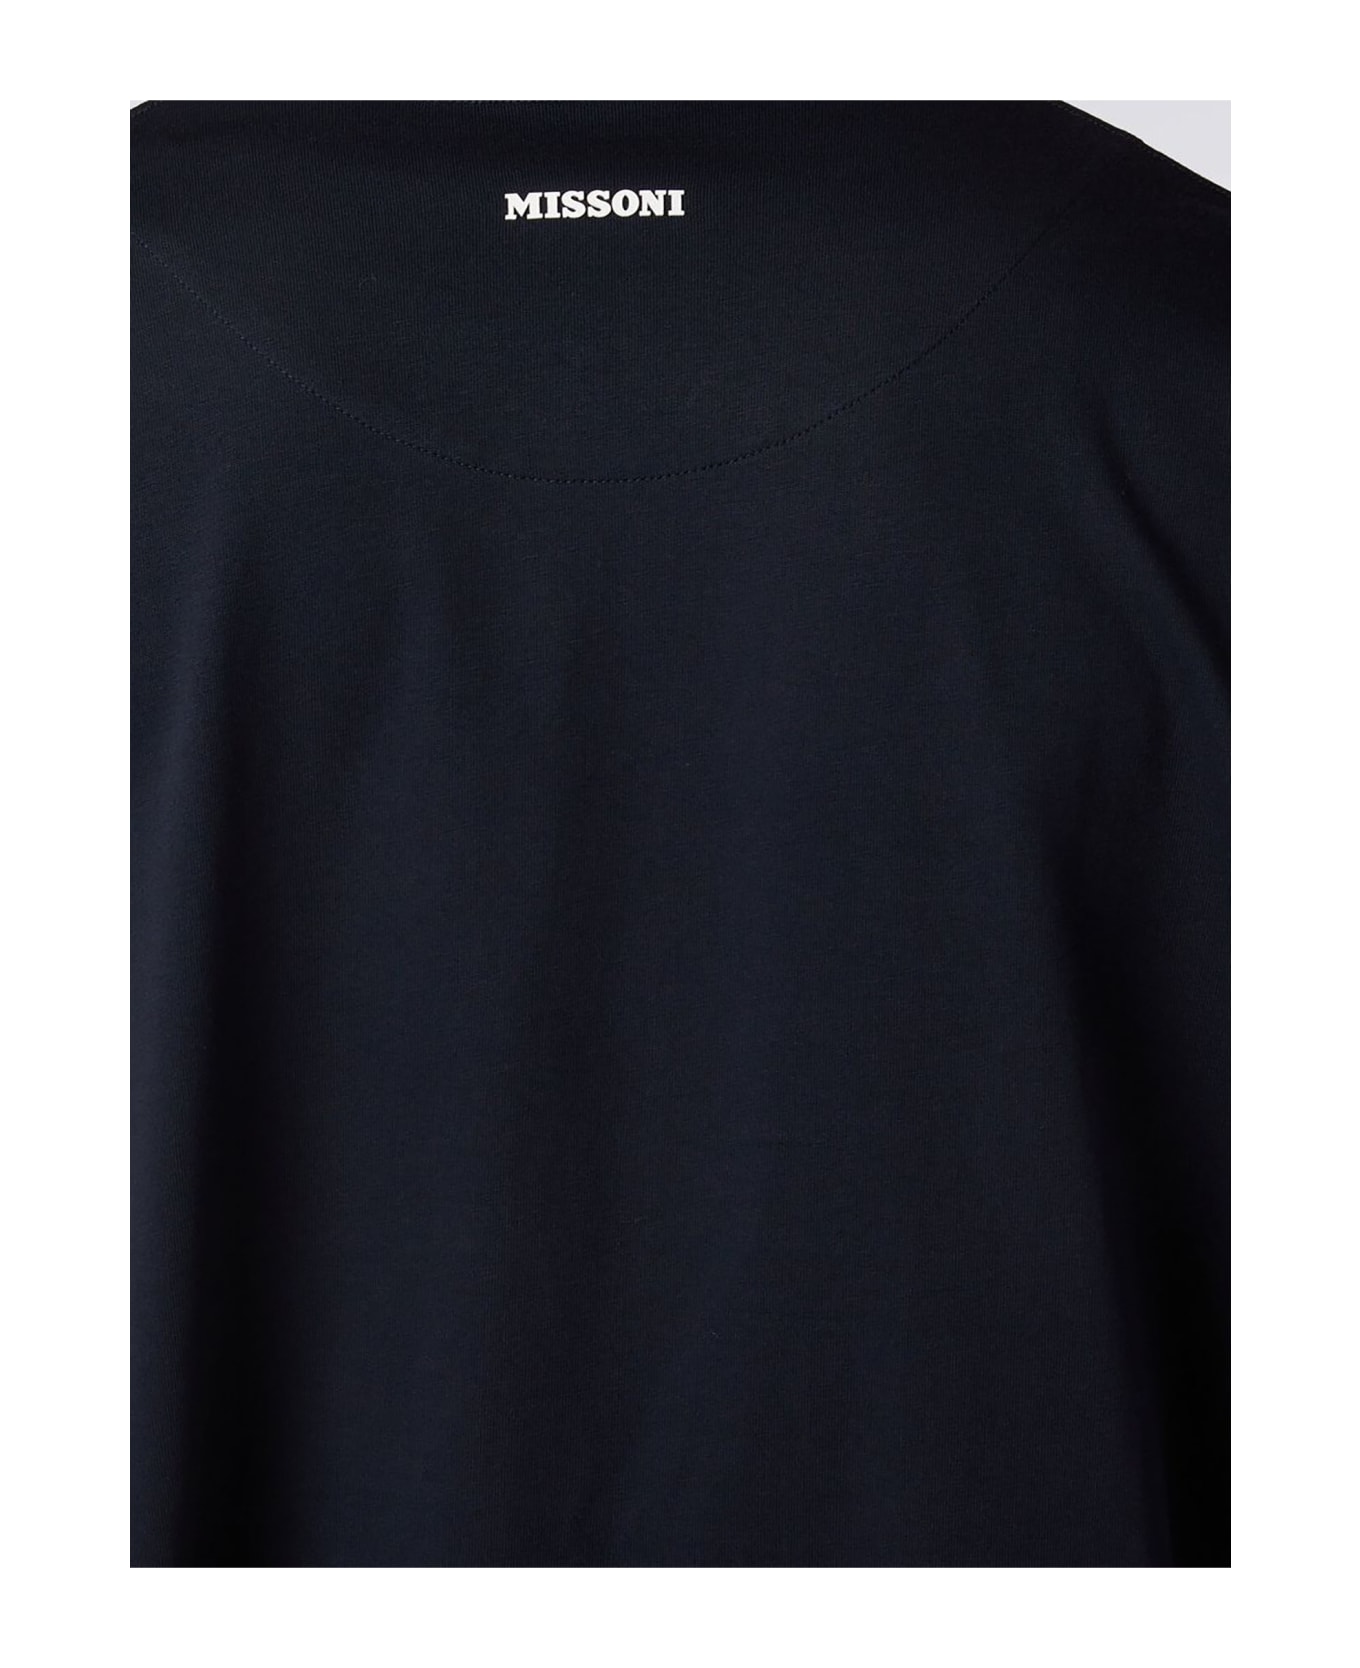 Missoni T-shirts And Polos Black - Black